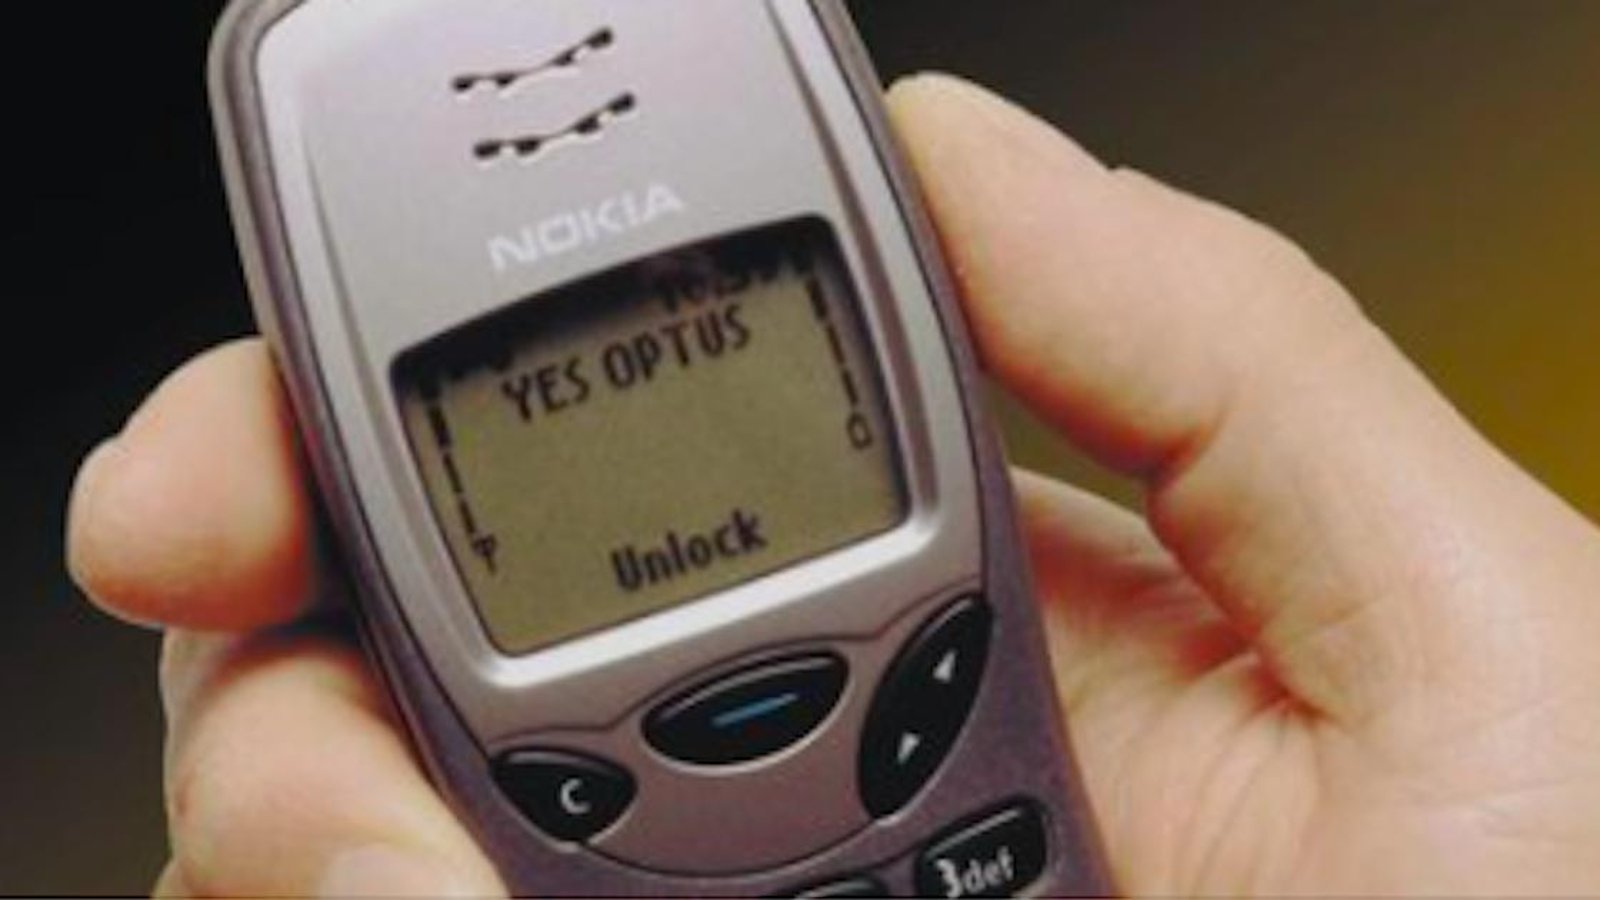 Votre vieux téléphone d'il y a 20 ans pourrait maintenant valoir une petite fortune!